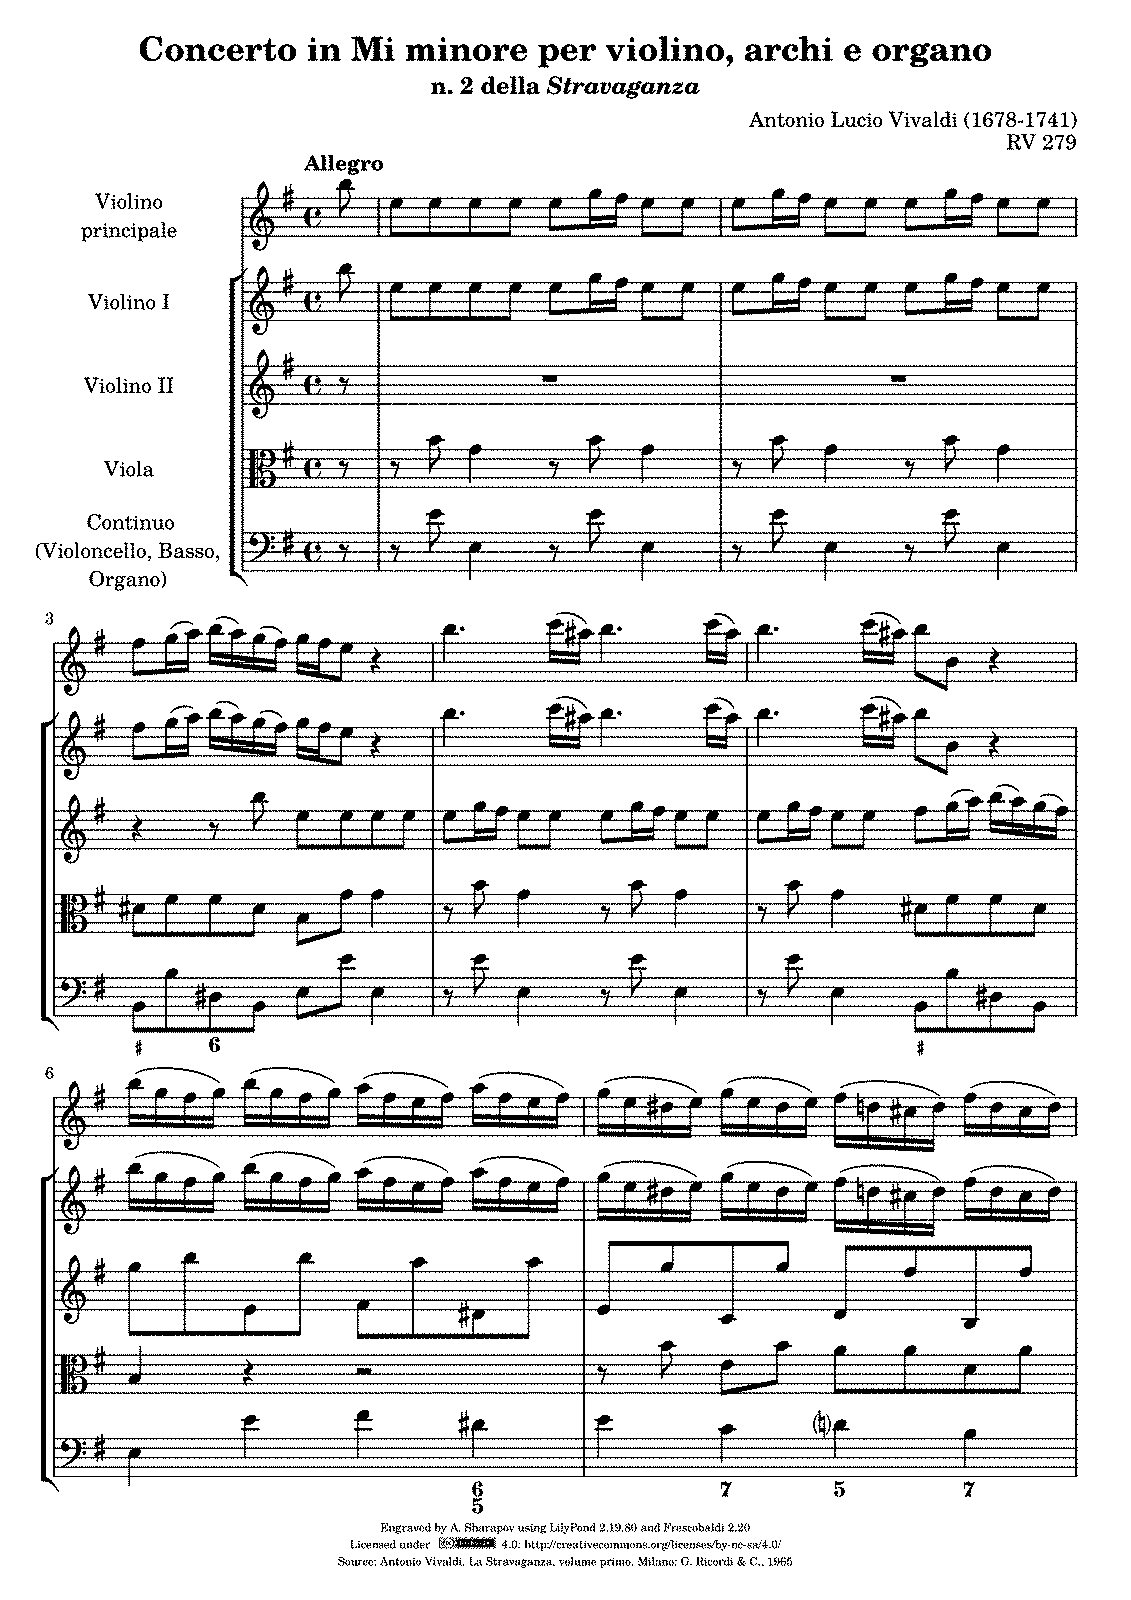 Violin Concerto in E minor, RV 279 (Vivaldi, Antonio) - IMSLP